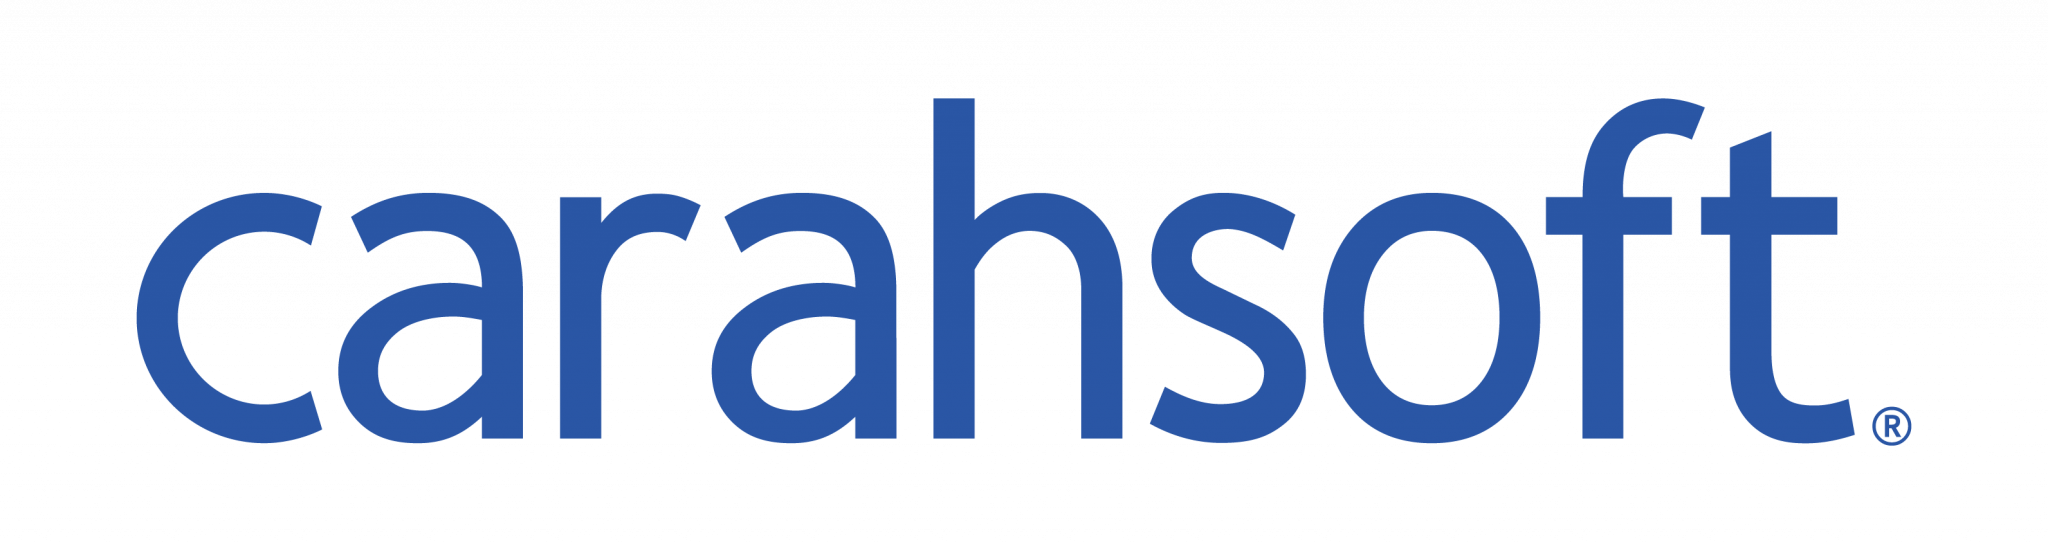 Carahsoft-Blue-Logo-Print